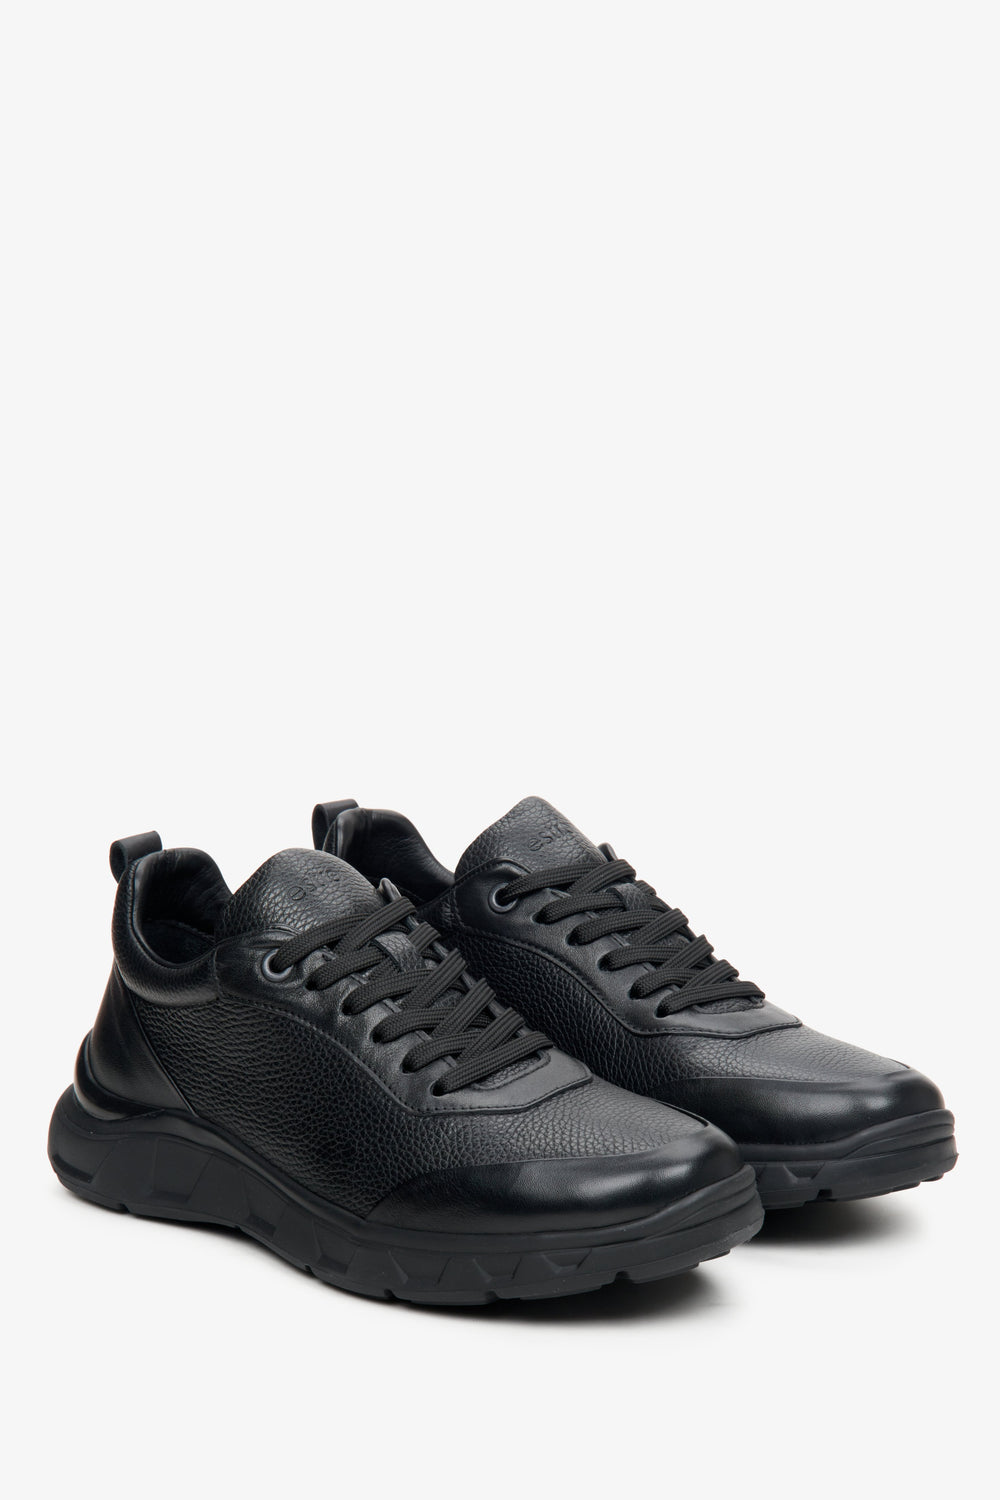 Czarne sneakersy męskie z teksturowanej skóry naturalnej Estro ER00113801